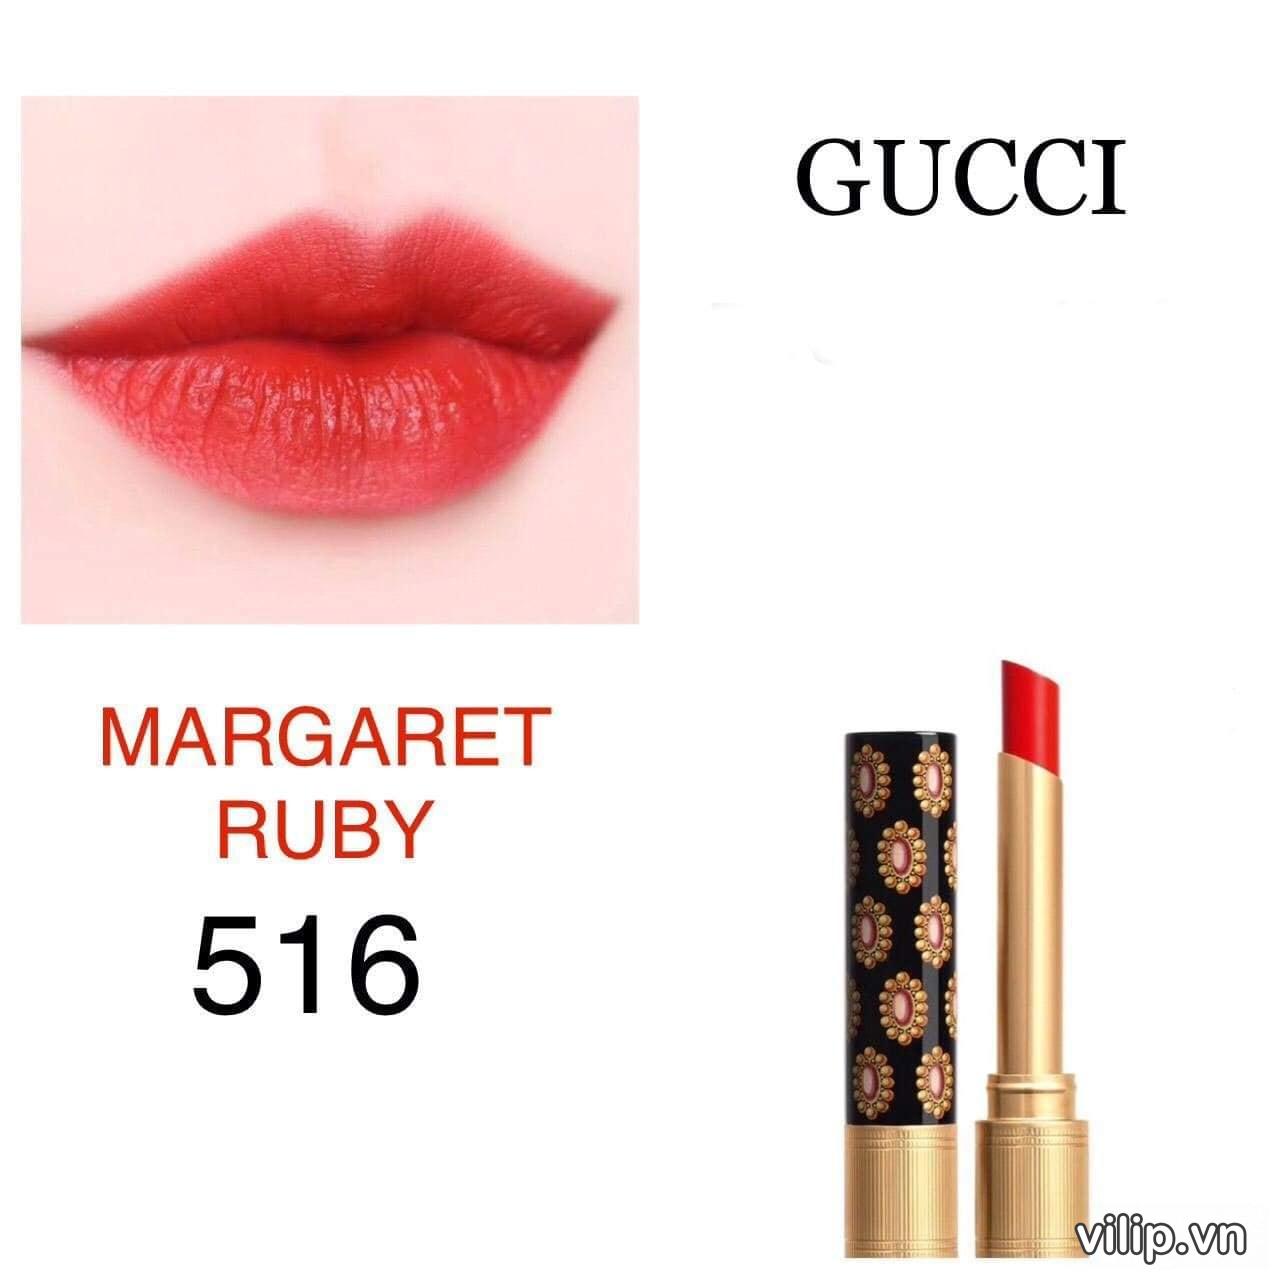 Son Gucci Rouge De Beauté Brillant 516 Margaret Ruby Màu Đỏ Tươi Ánh Cam 19